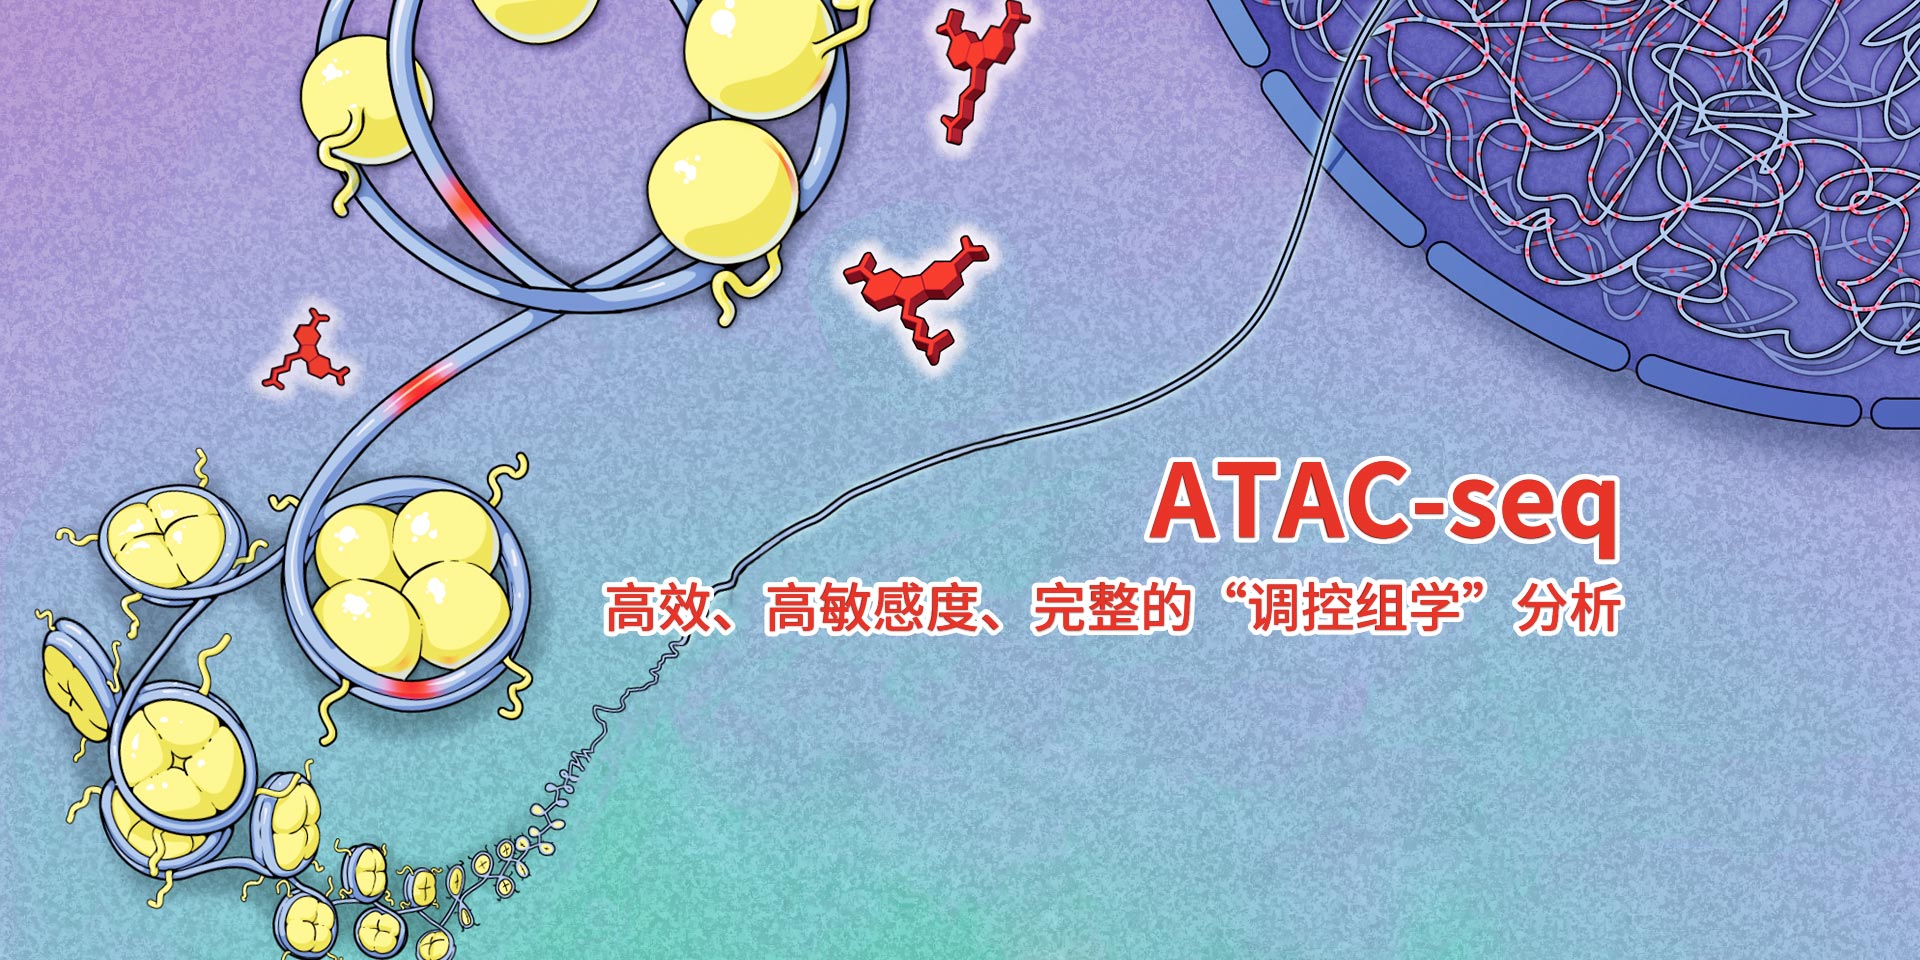 广州表观生物科技有限公司-69-12轮播图